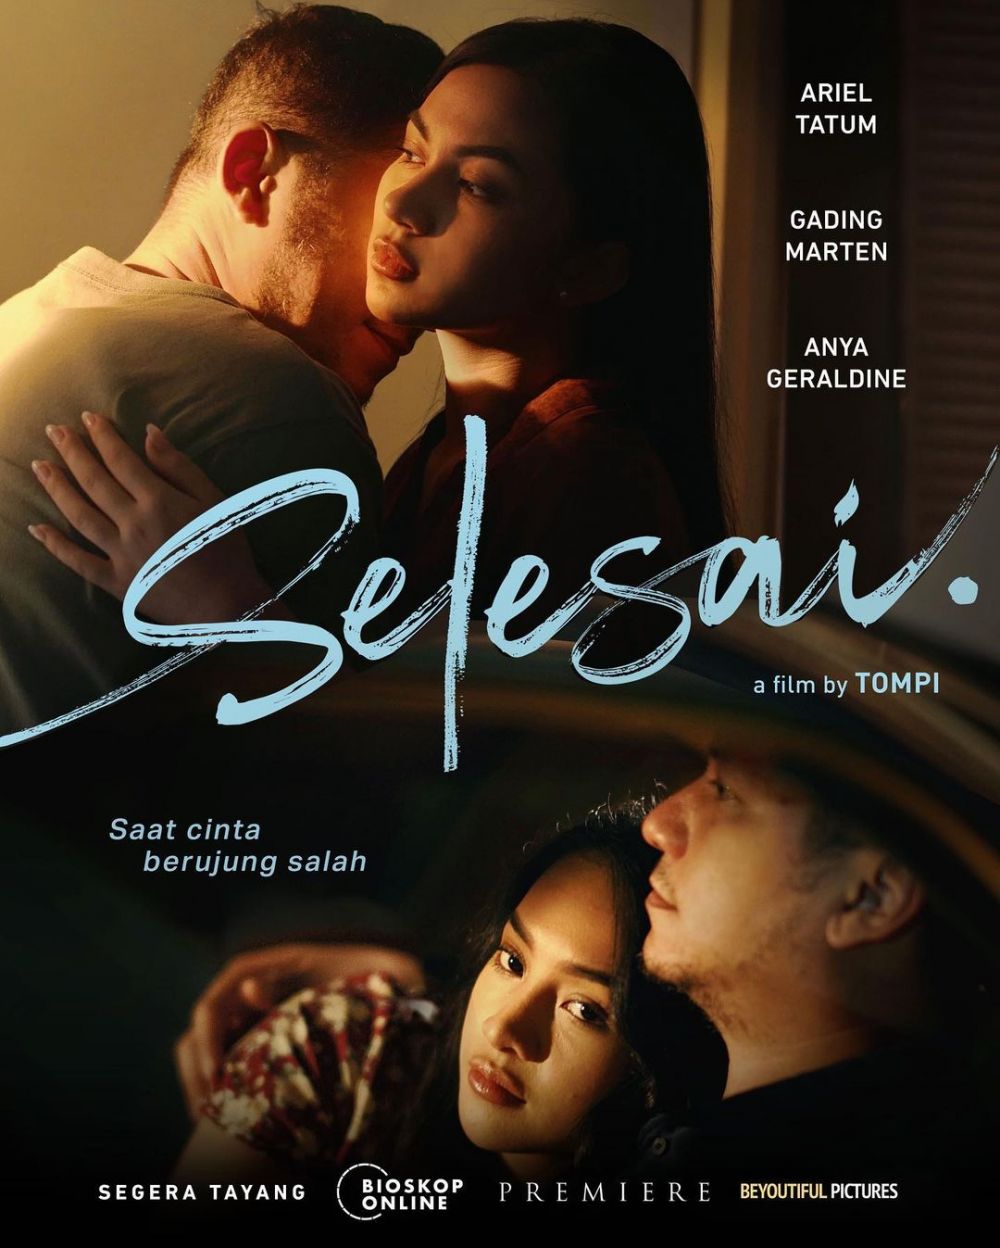 10 Film Indonesia tentang perselingkuhan, 'Selesai' menuai kritik